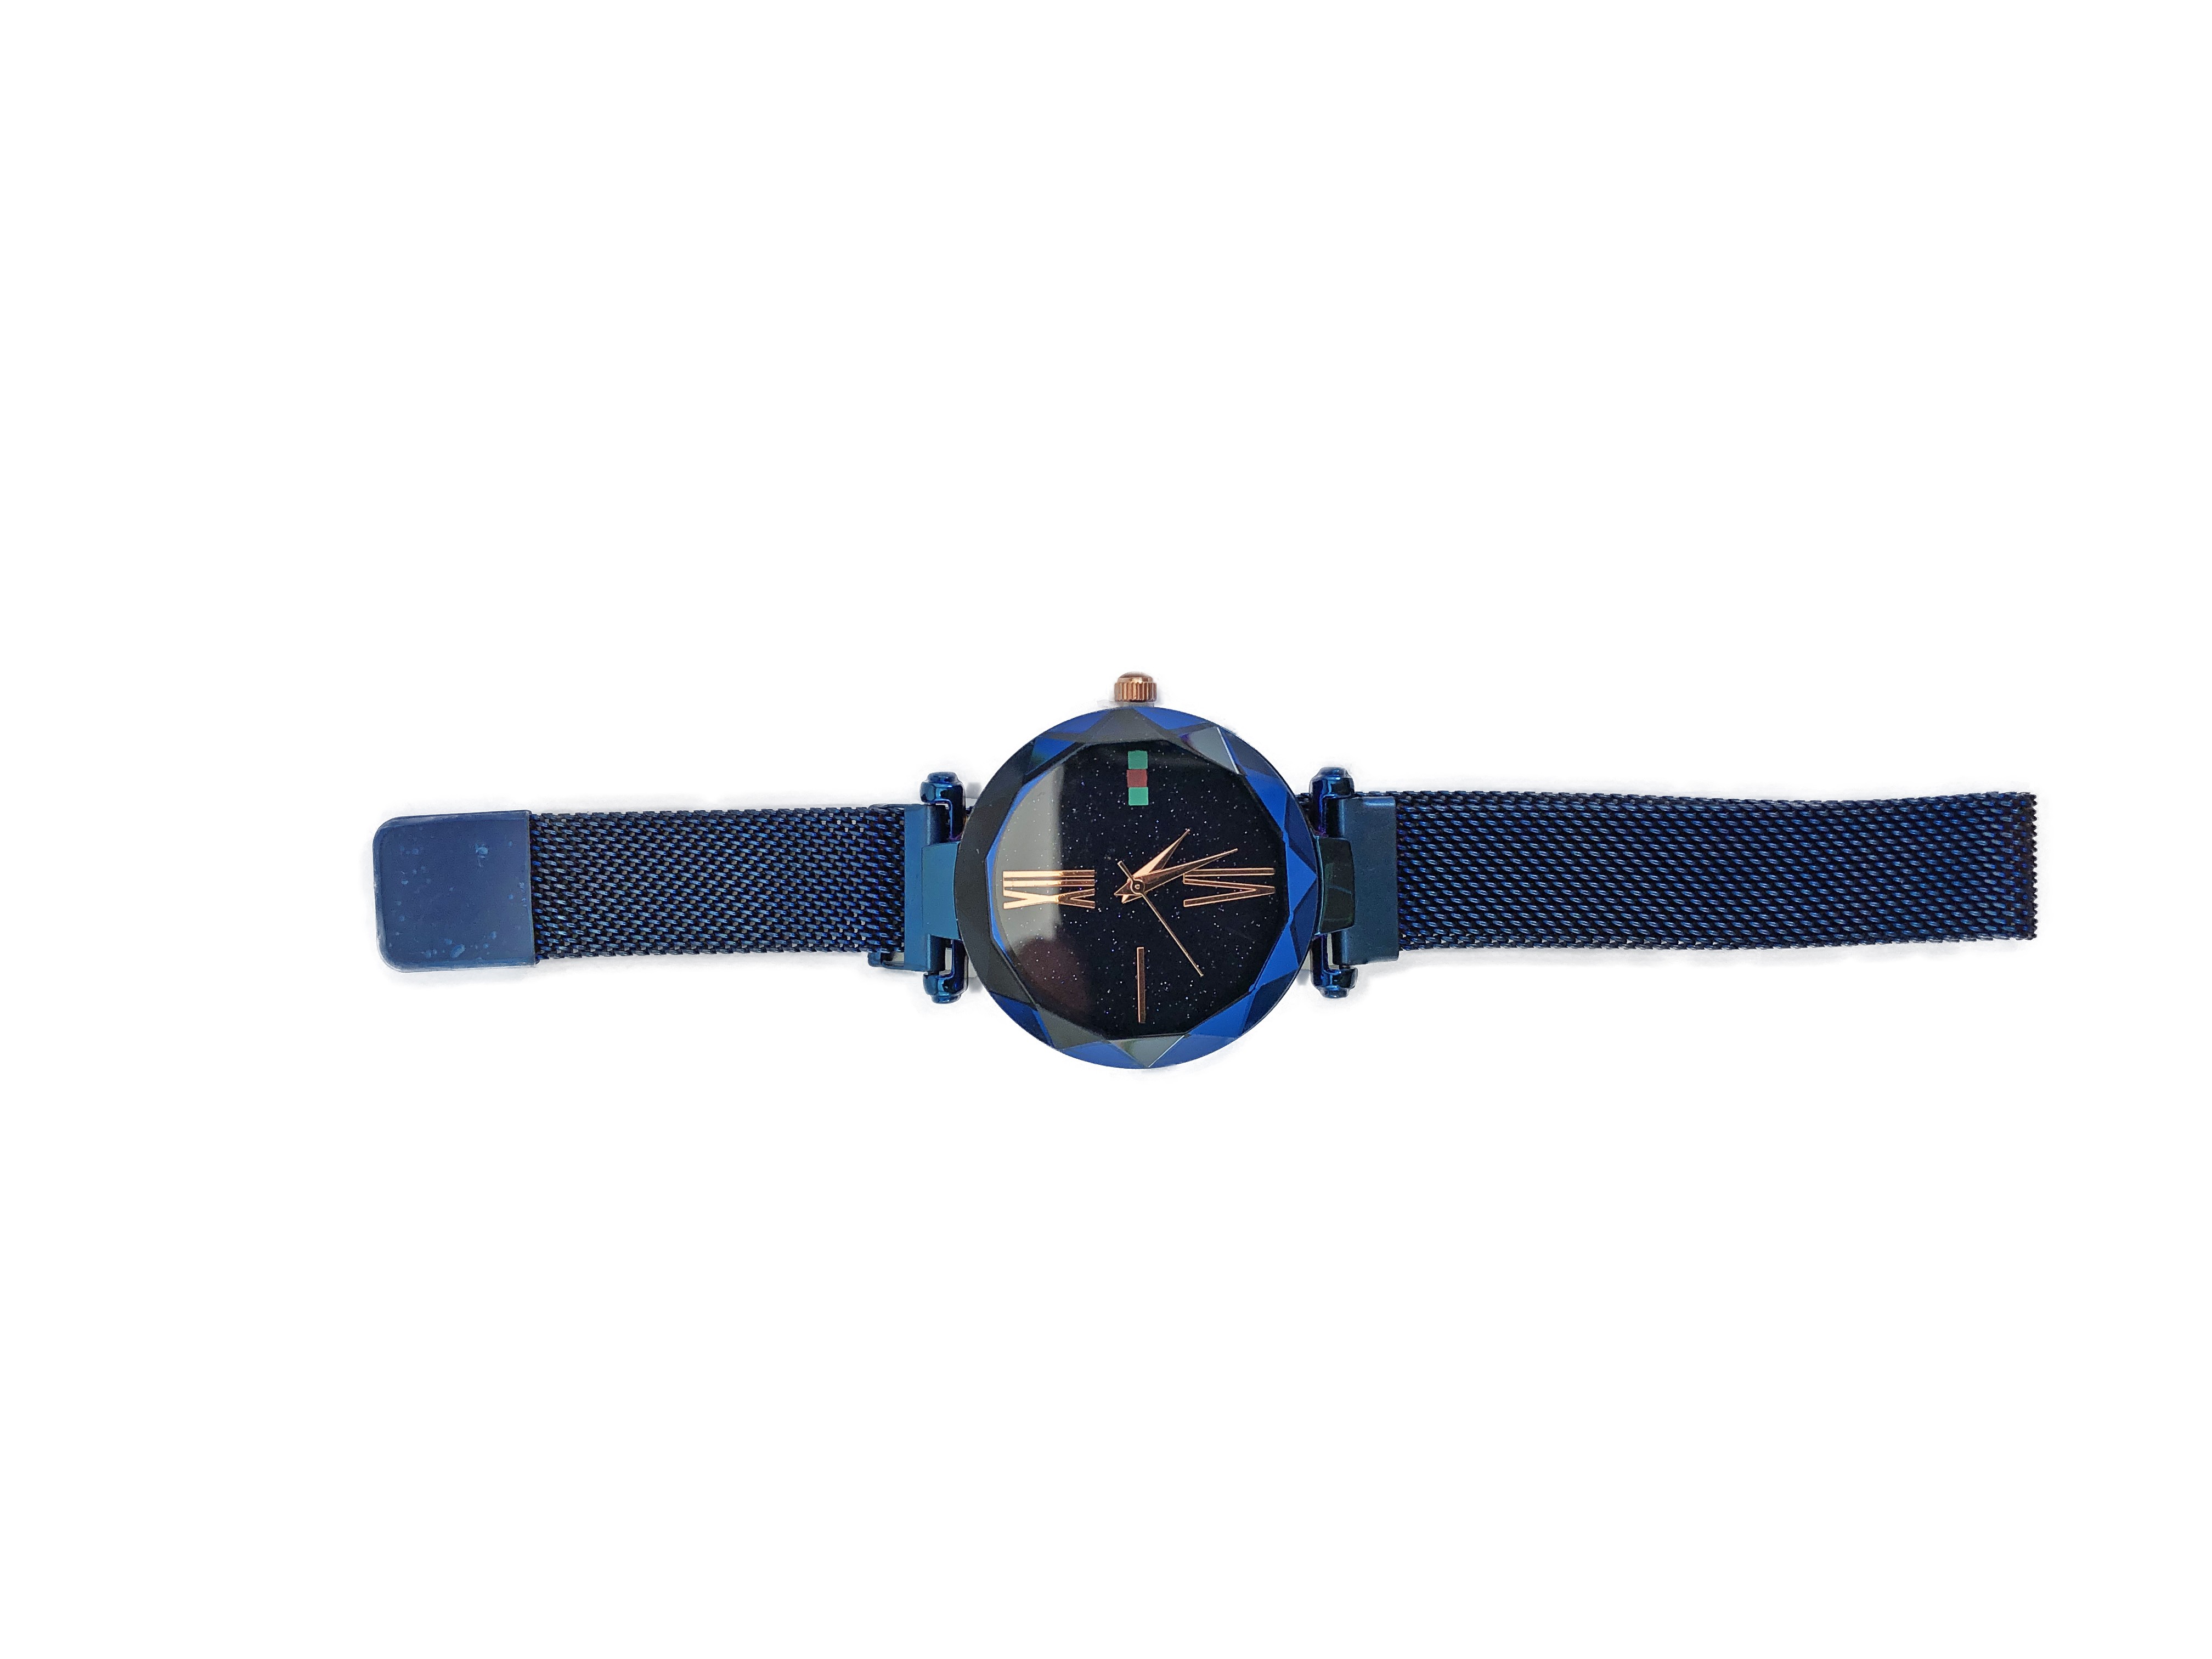 Женские наручные часы Starry Sky Premium оптом 